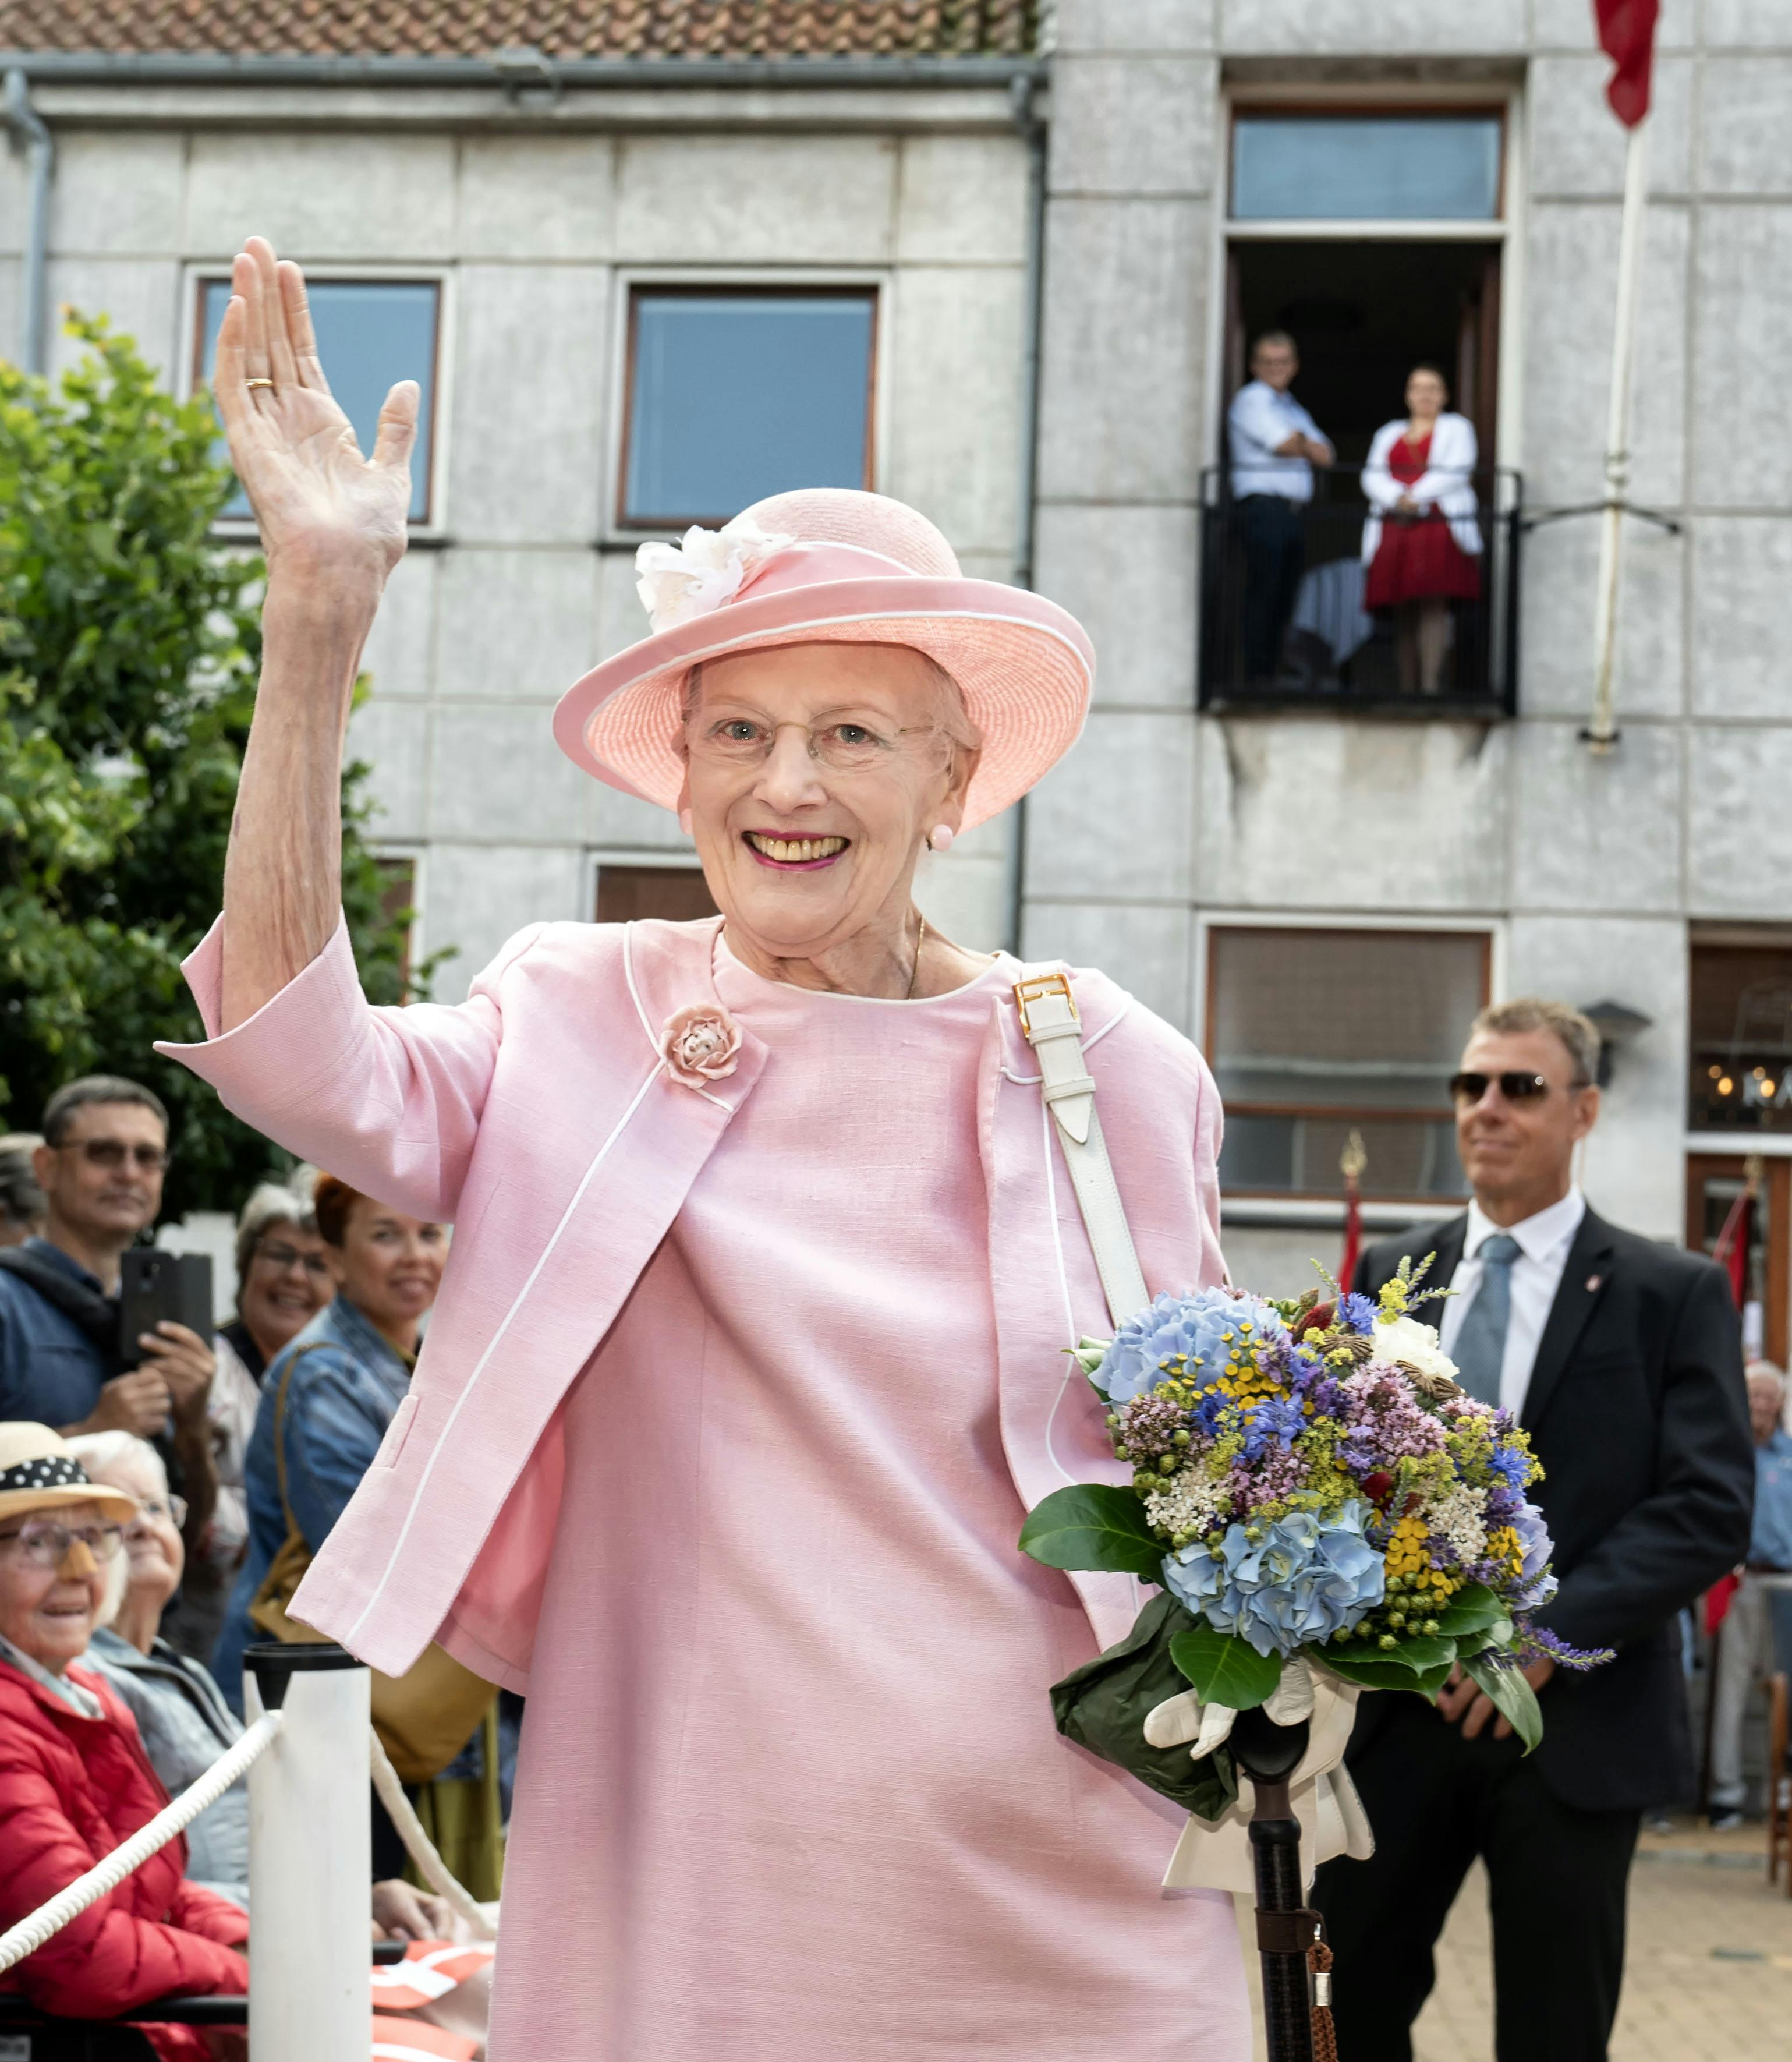 OPGAVE: Dronning Margrethe modtages officielt af Sønderborg kommune.STED: Gråsten torvJOURNALIST: Ulrik UlrikseFOTOGRAF: Hanne JuulDATO: 20230718